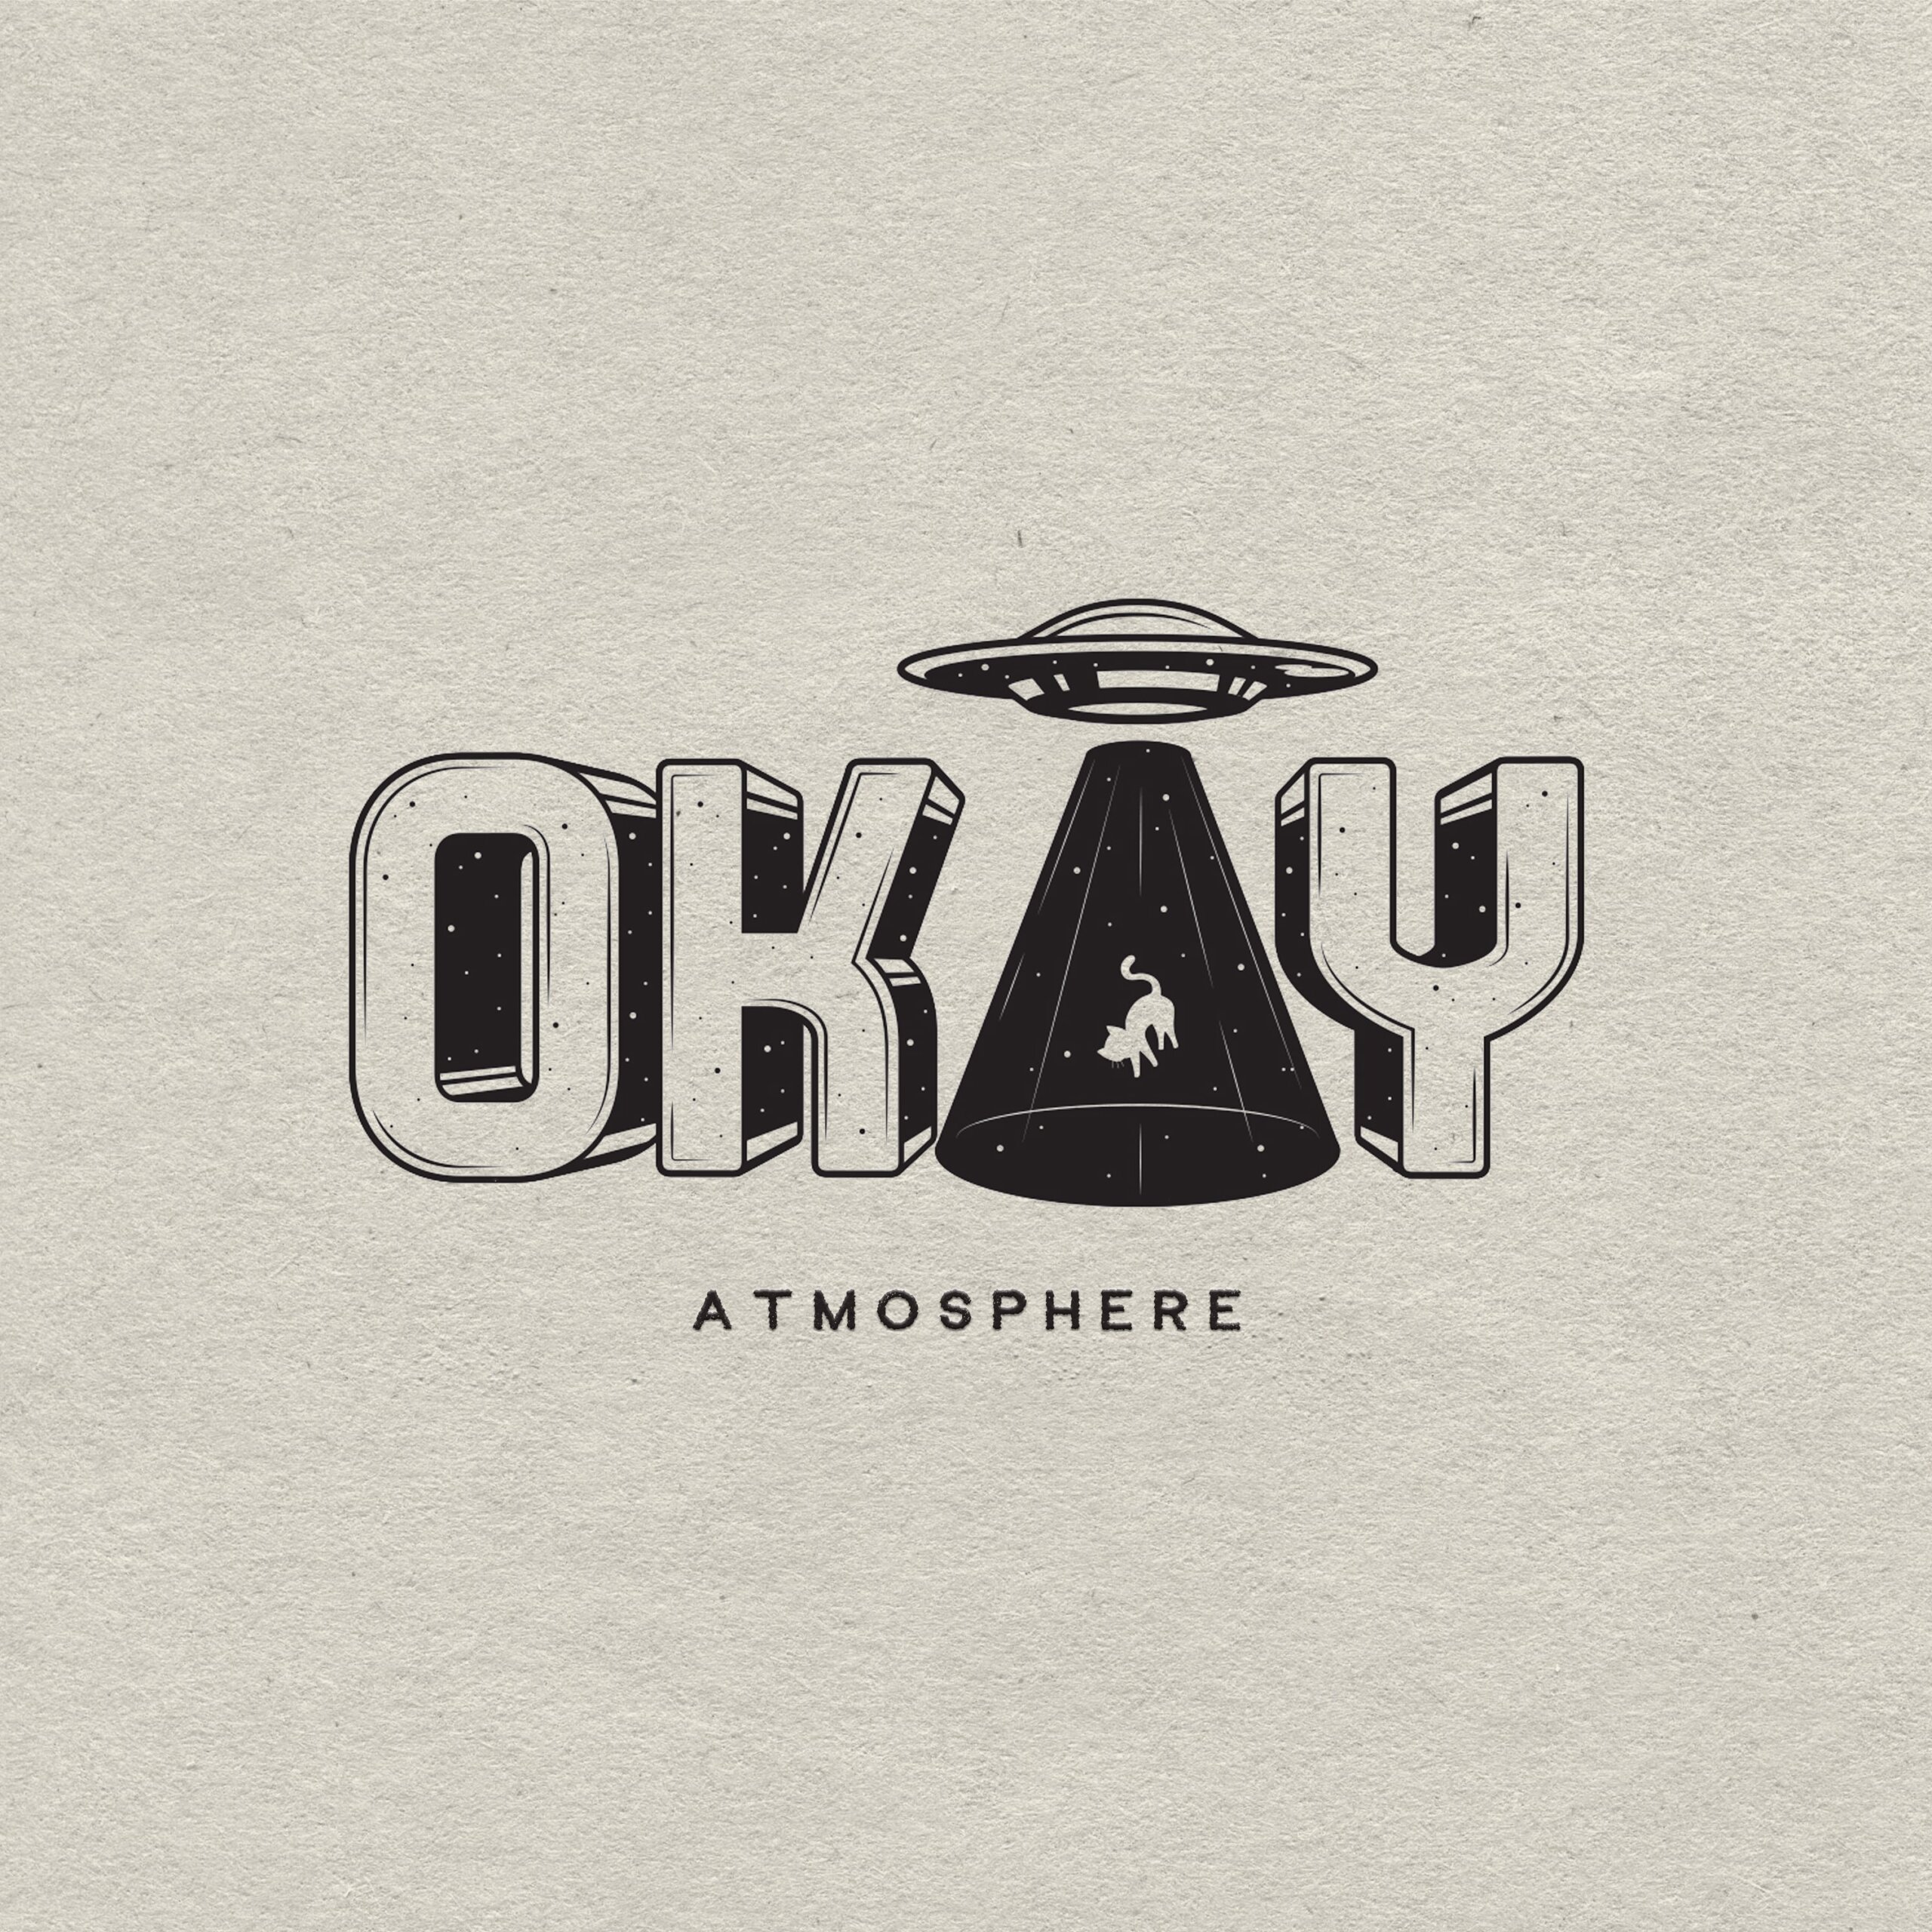 Atmosphere "Okay" (Video)